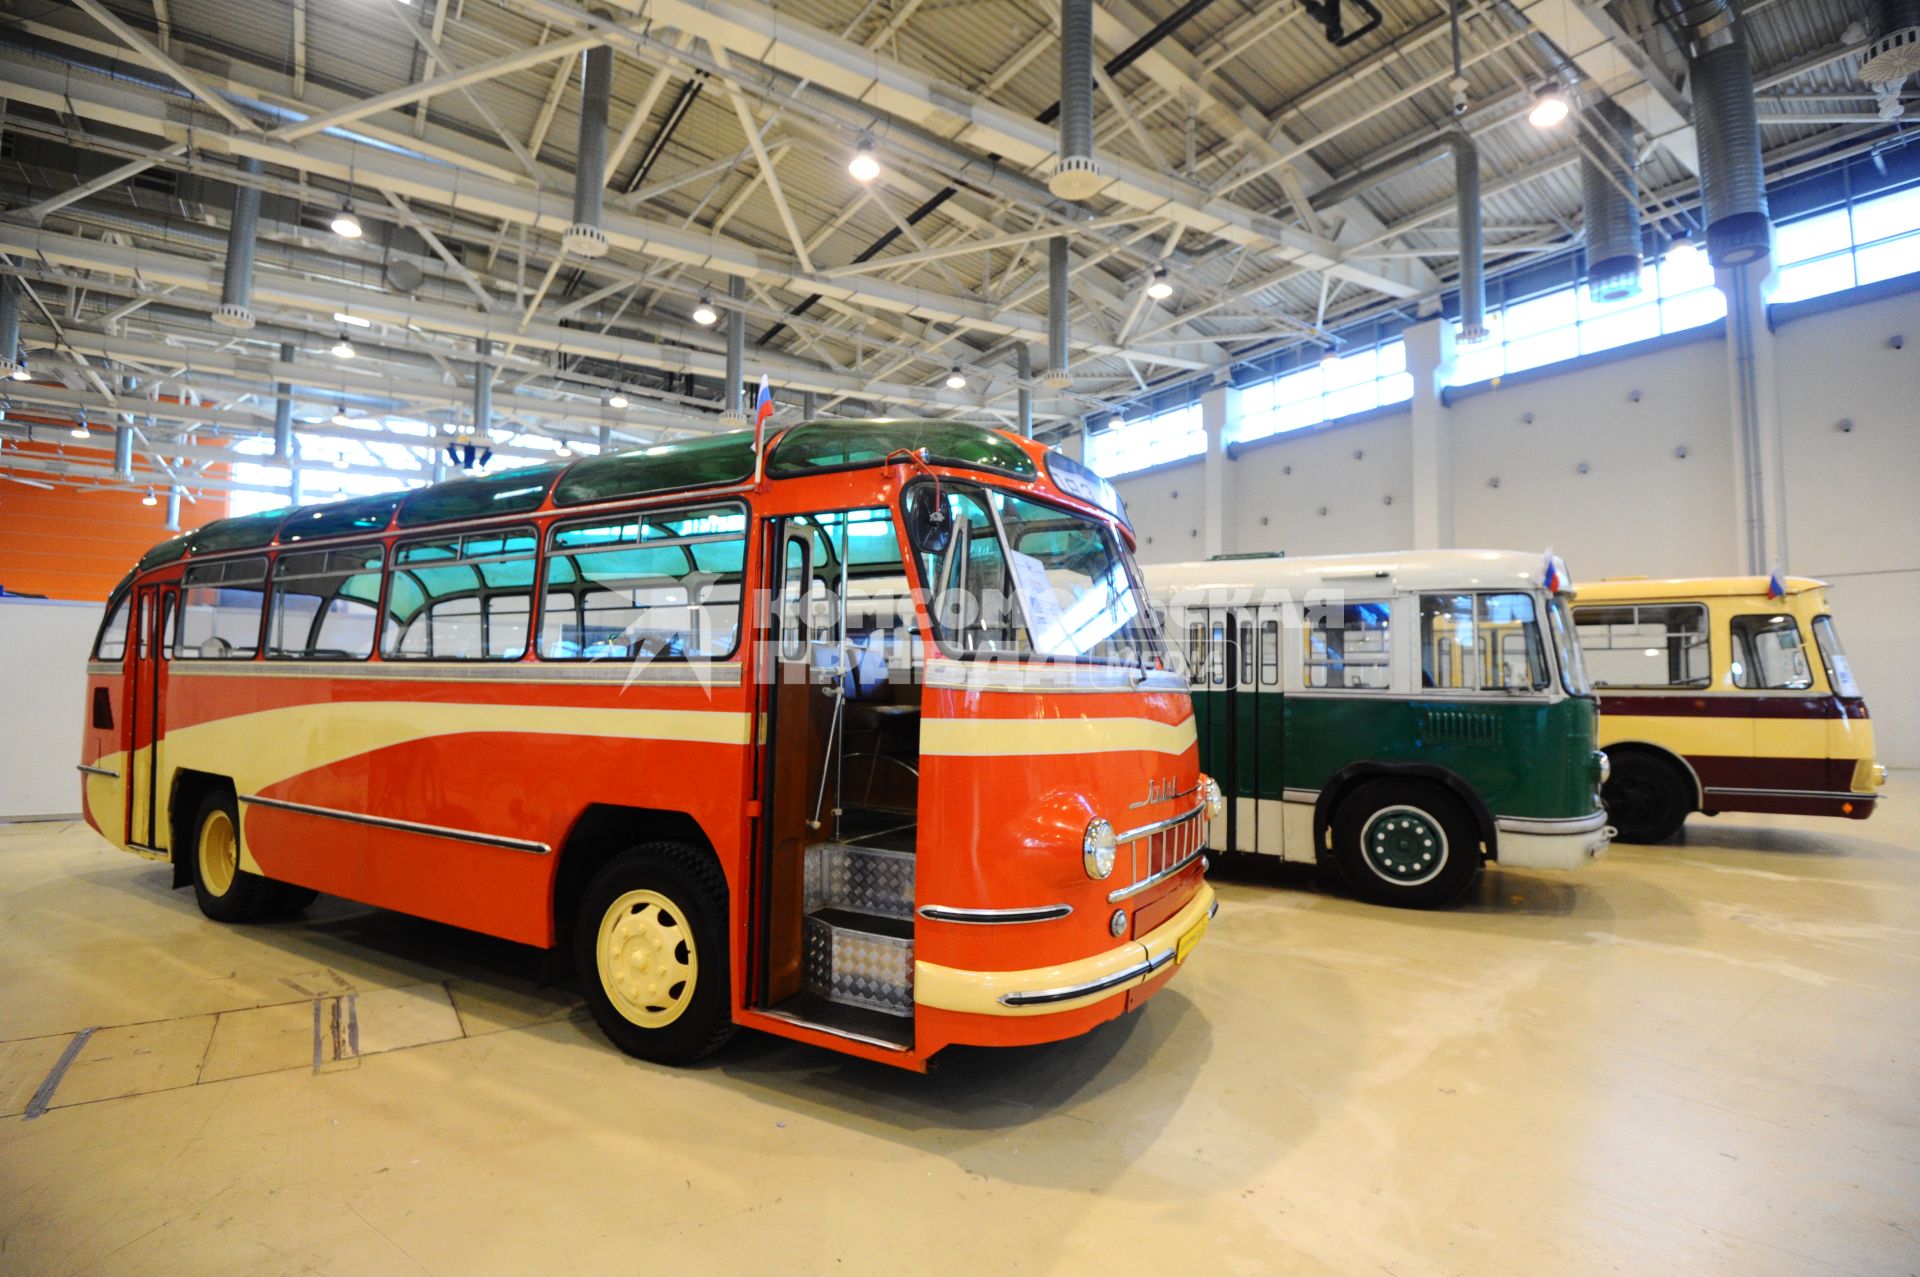 Выставка `ЭкспоСитиТранс 2014` в Москве. На снимке: автобус ЛАЗ.